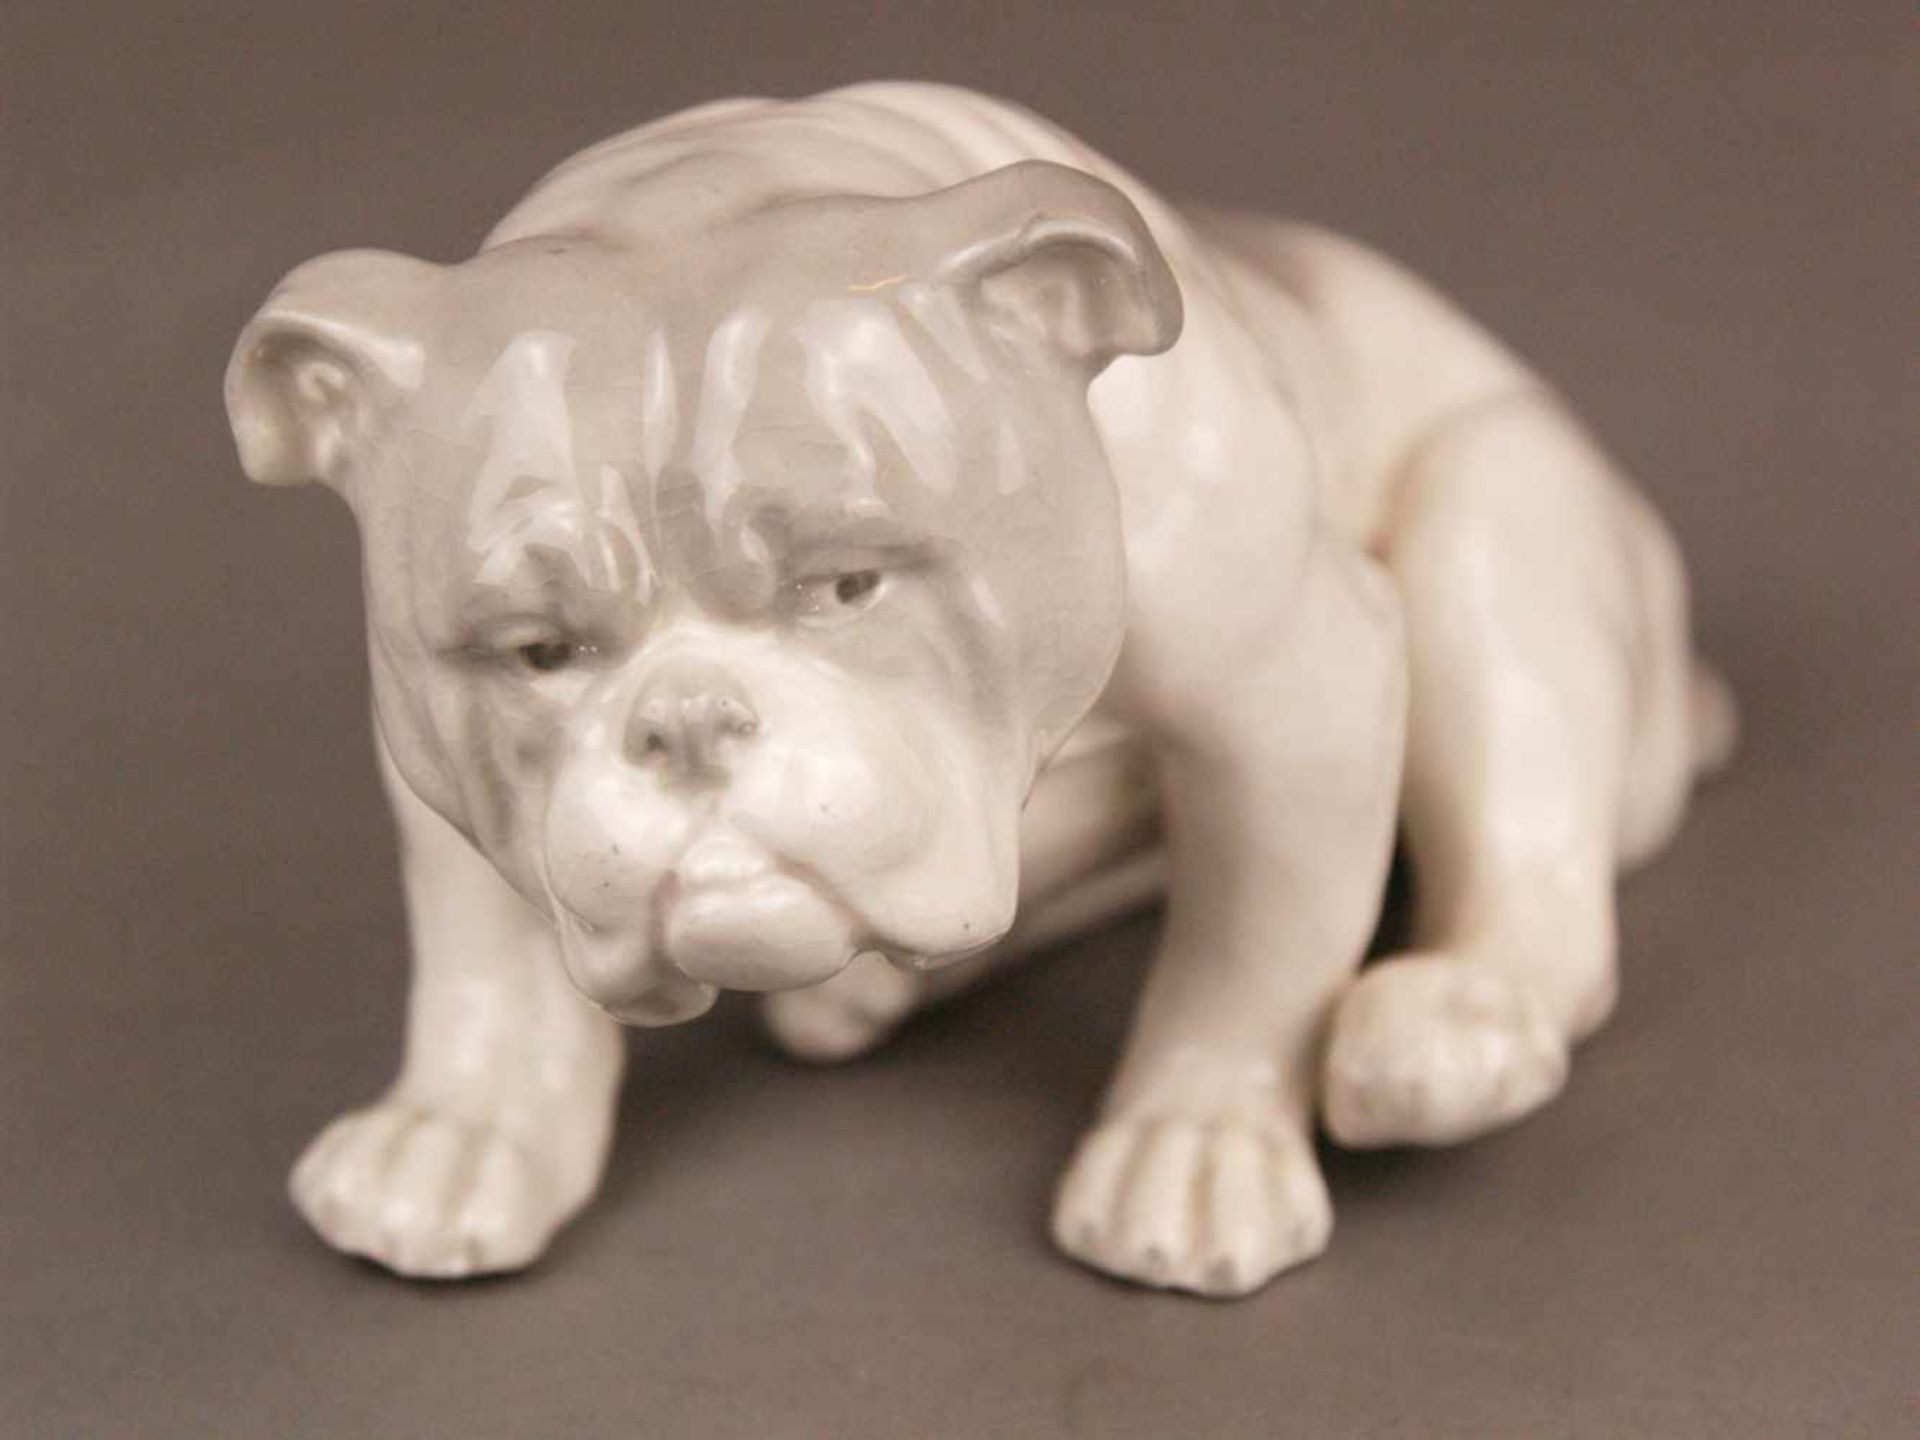 Porzellanfigur Bulldogge - wohl Gebrüder Heubach/Lichte um 1920, pastelltönige